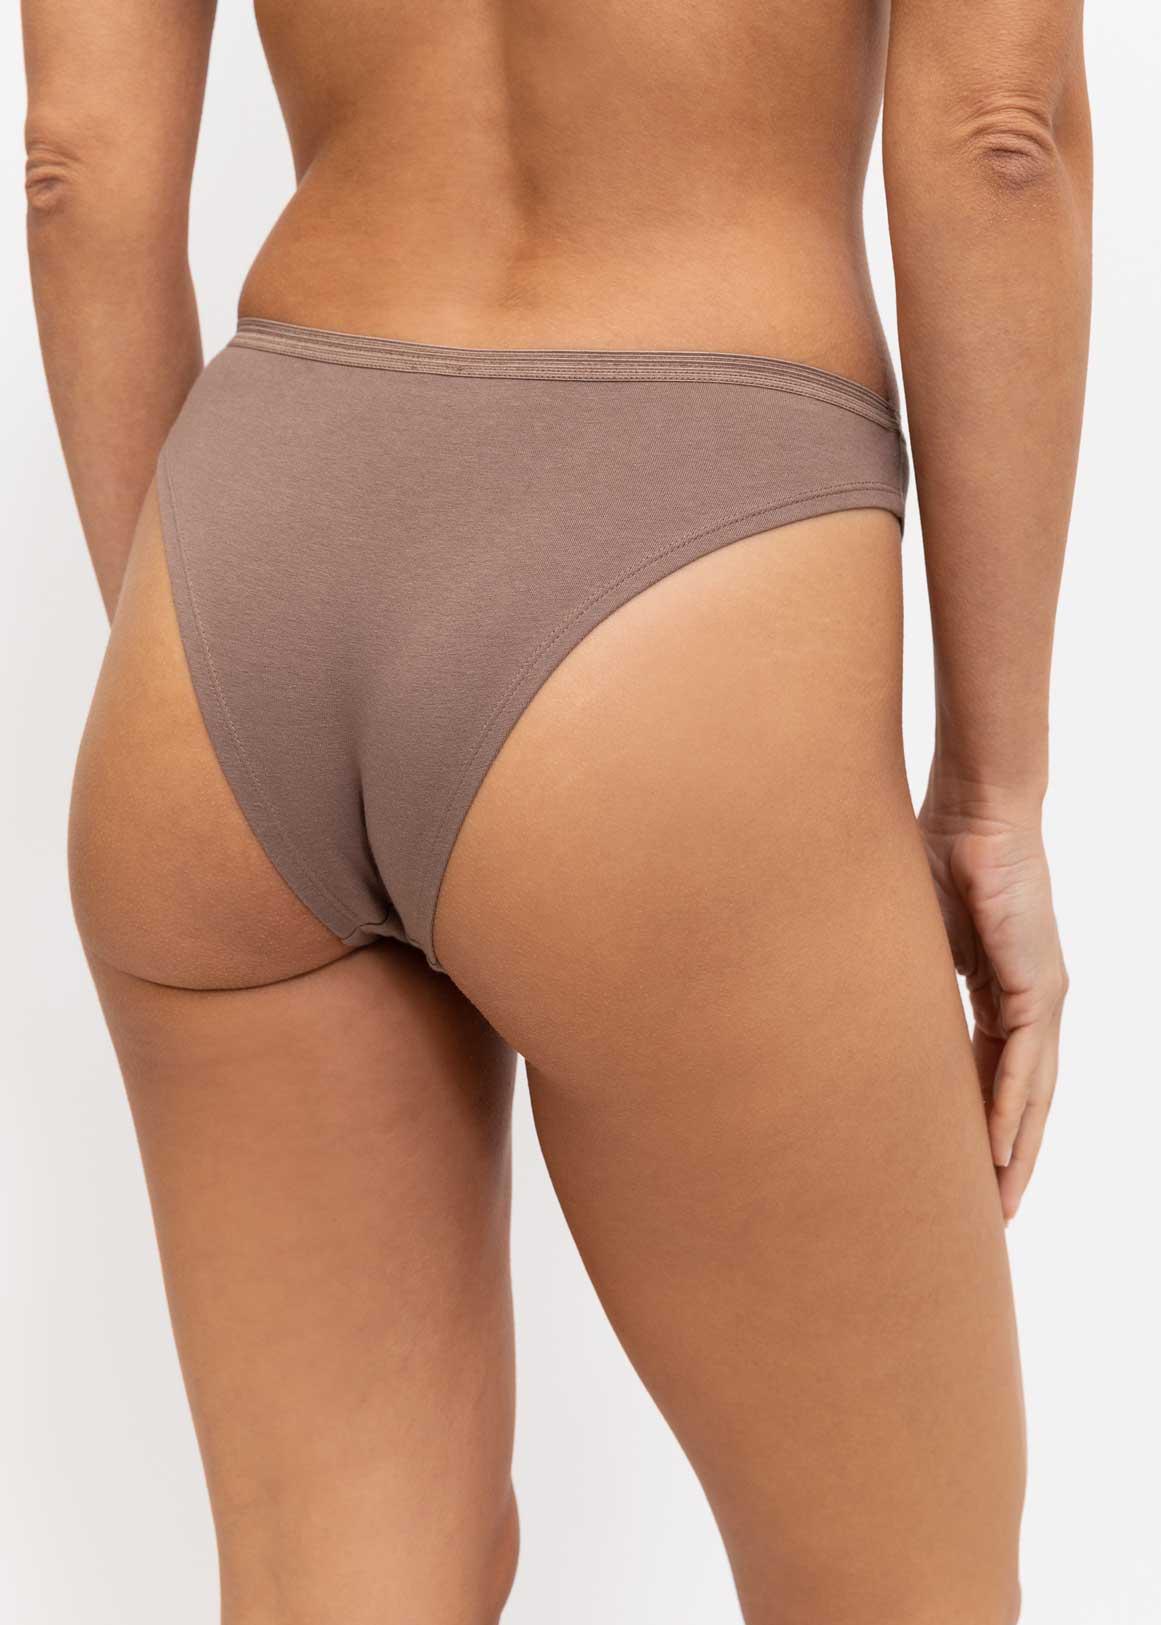 3-Pack of cotton Brazilian briefs - Thongs - Briefs - Underwear - UNDERWEAR, PYJAMAS - Woman 